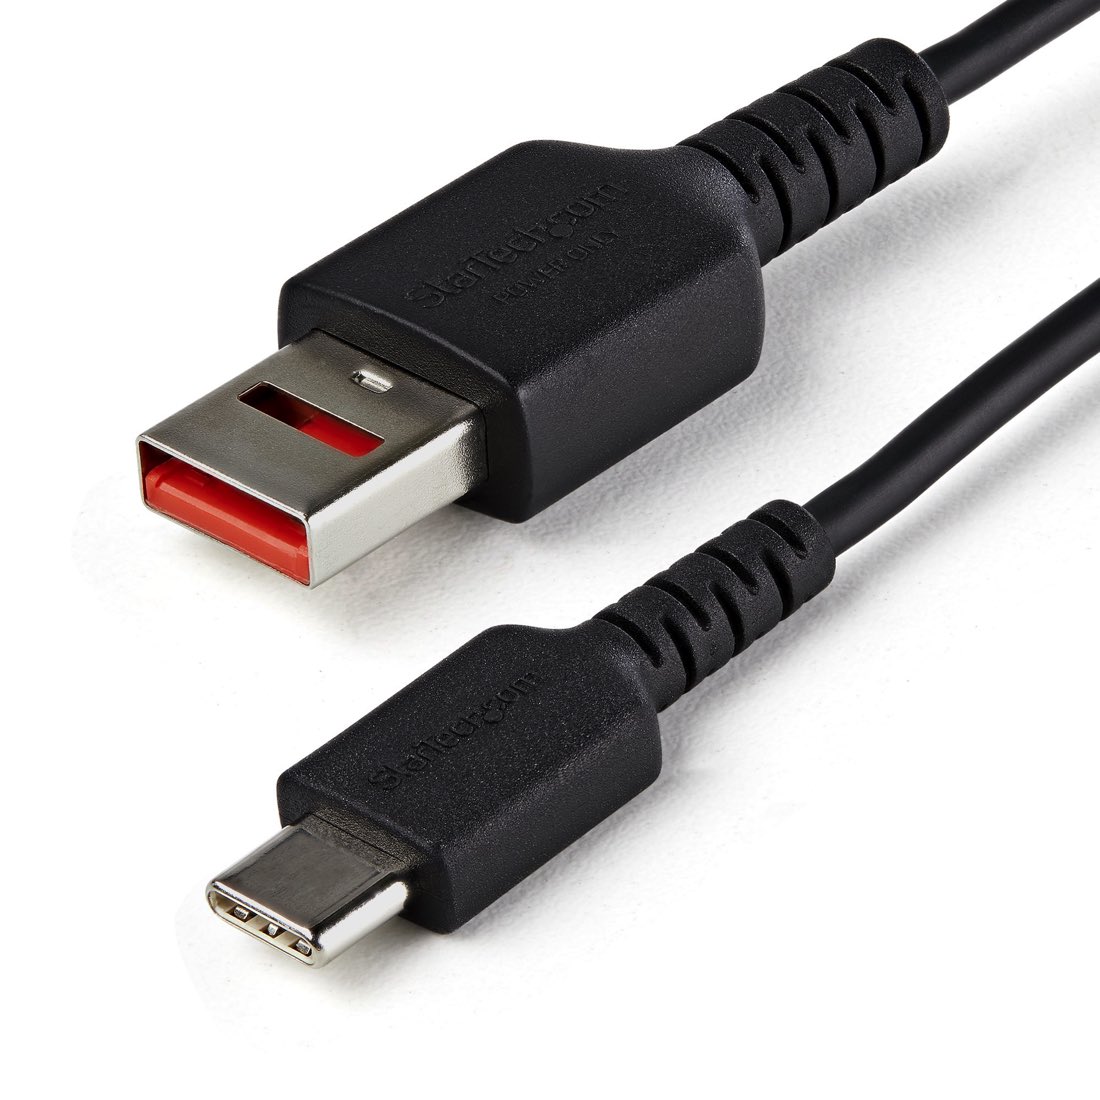 StarTech.com Cable de 1m Adaptador Bloqueador USB de Datos – Adaptador USB a USB-C de Carga Segura – USB Tipo C Solo de Carga para Tablet o Teléfono